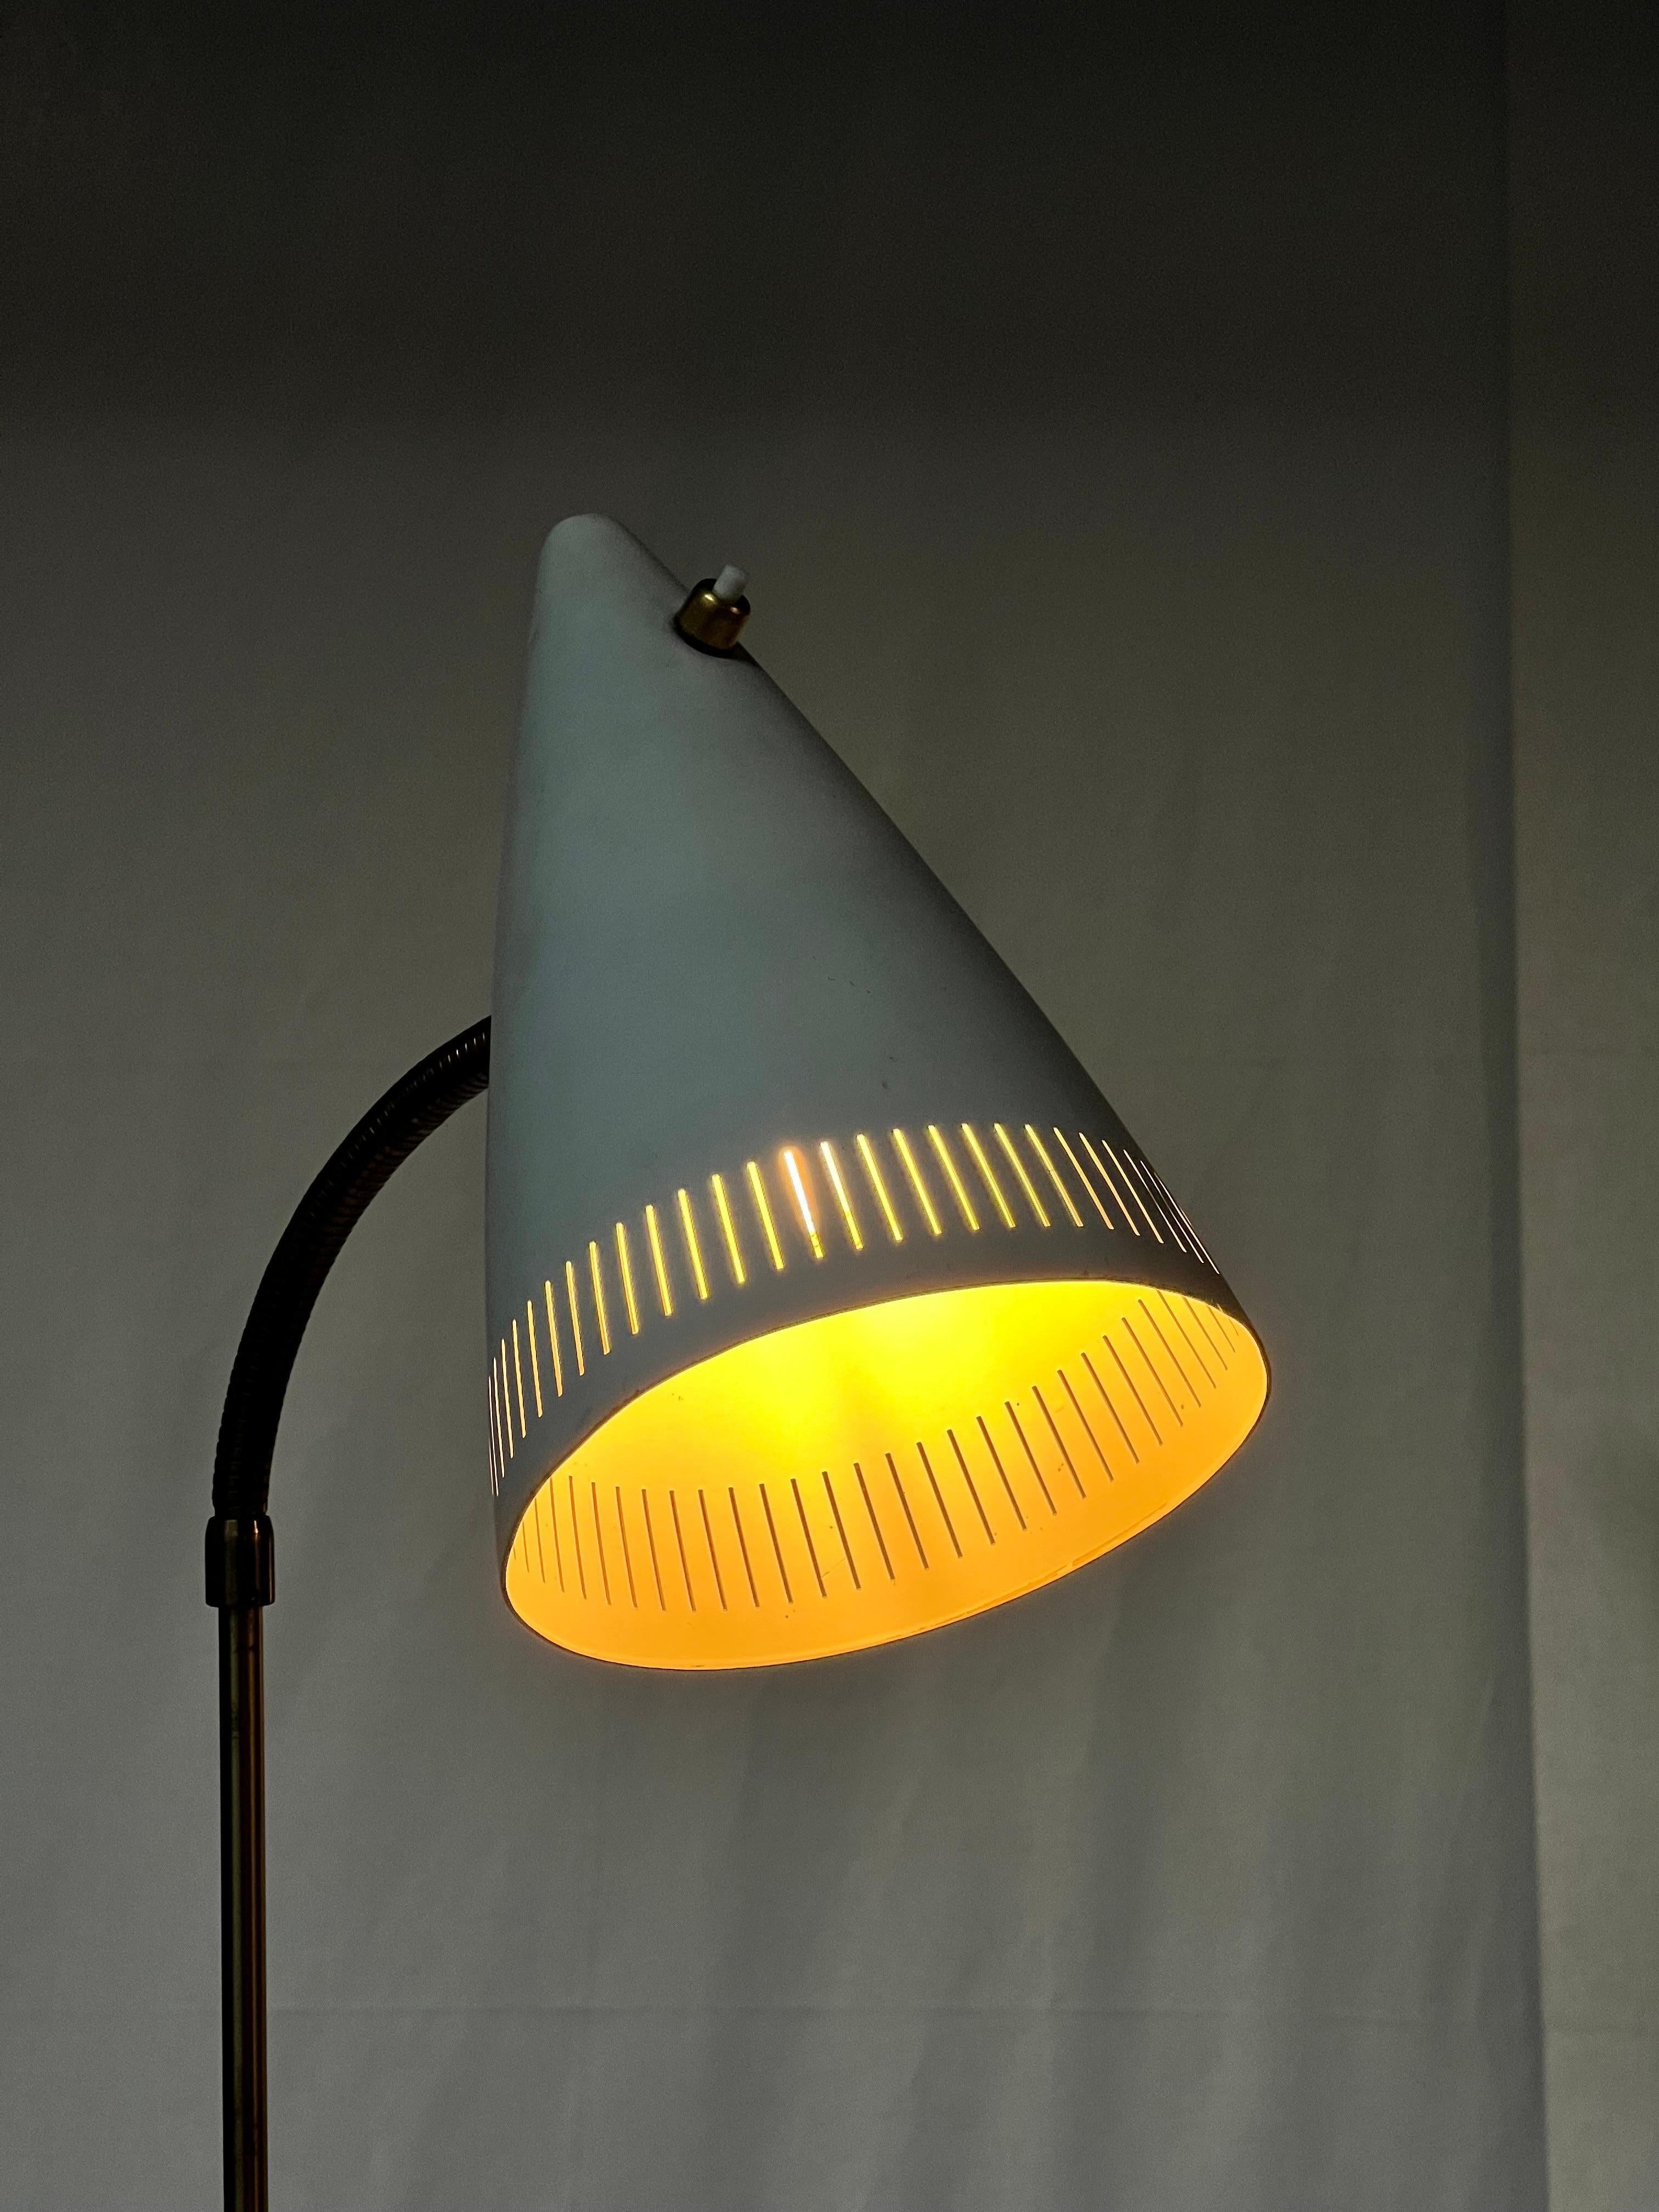 Dies ist eine verstellbare Stehlampe aus Messing des berühmten schwedischen Herstellers Falkenberg. Die Lampenschirme sind aus Aluminium gefertigt, weiß lackiert und mit einem Schalterknopf aus Messing versehen. Ein Blasenlicht im Inneren. Sie